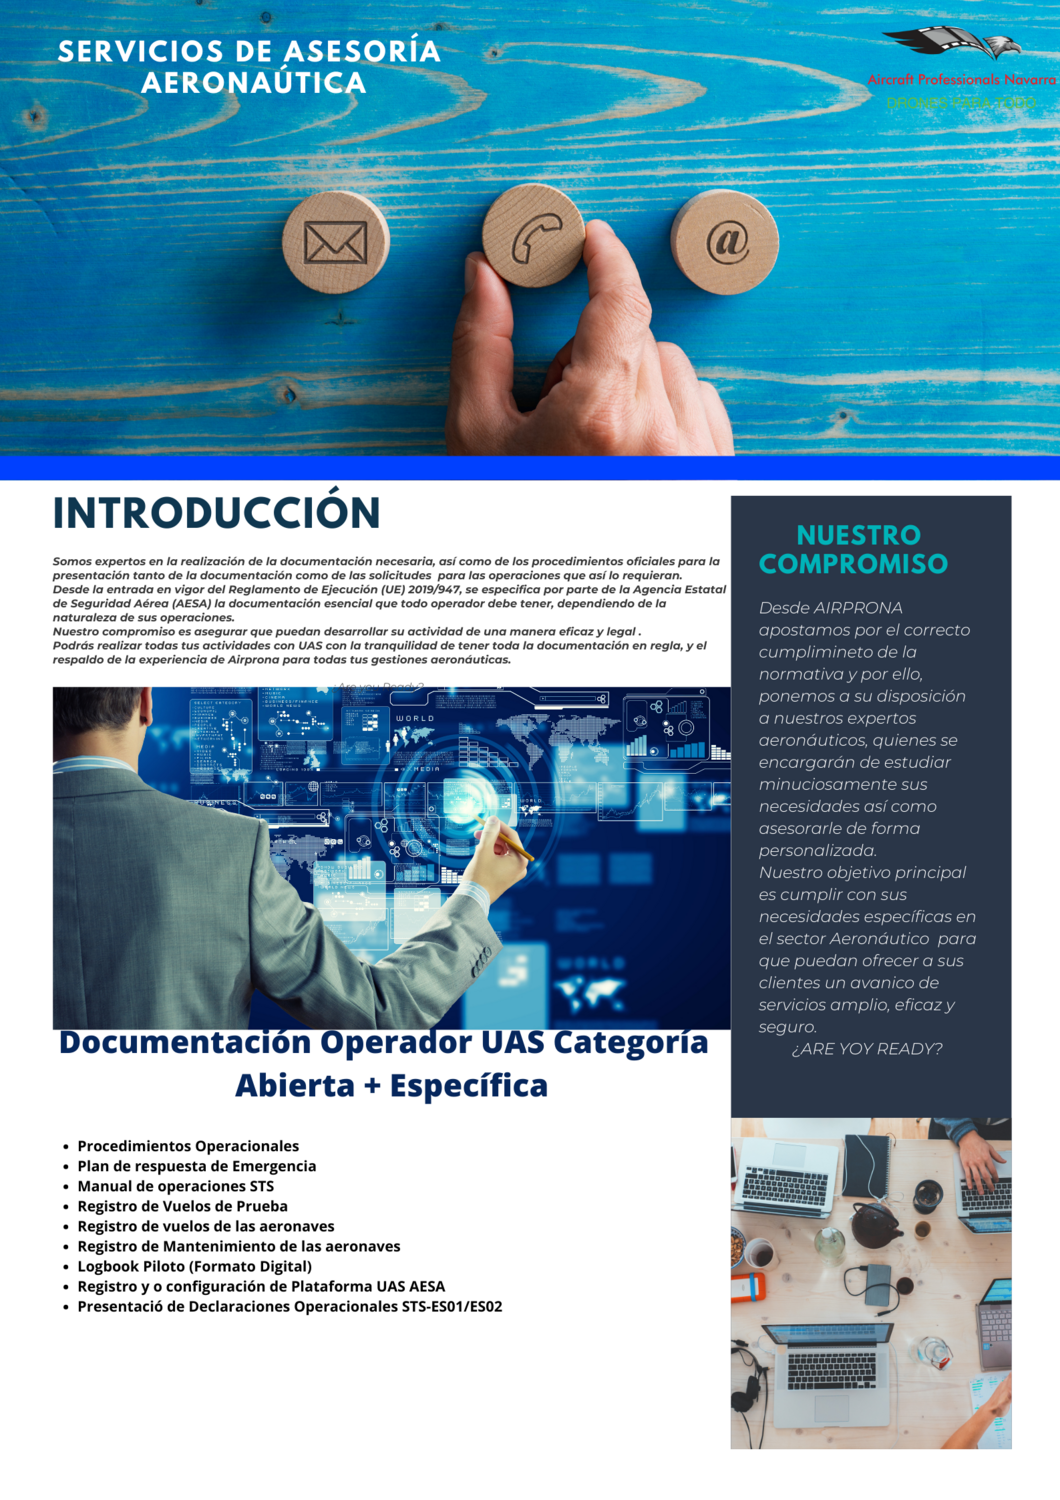 "Documentación Operador UAS Categoría
Abierta + Específica"